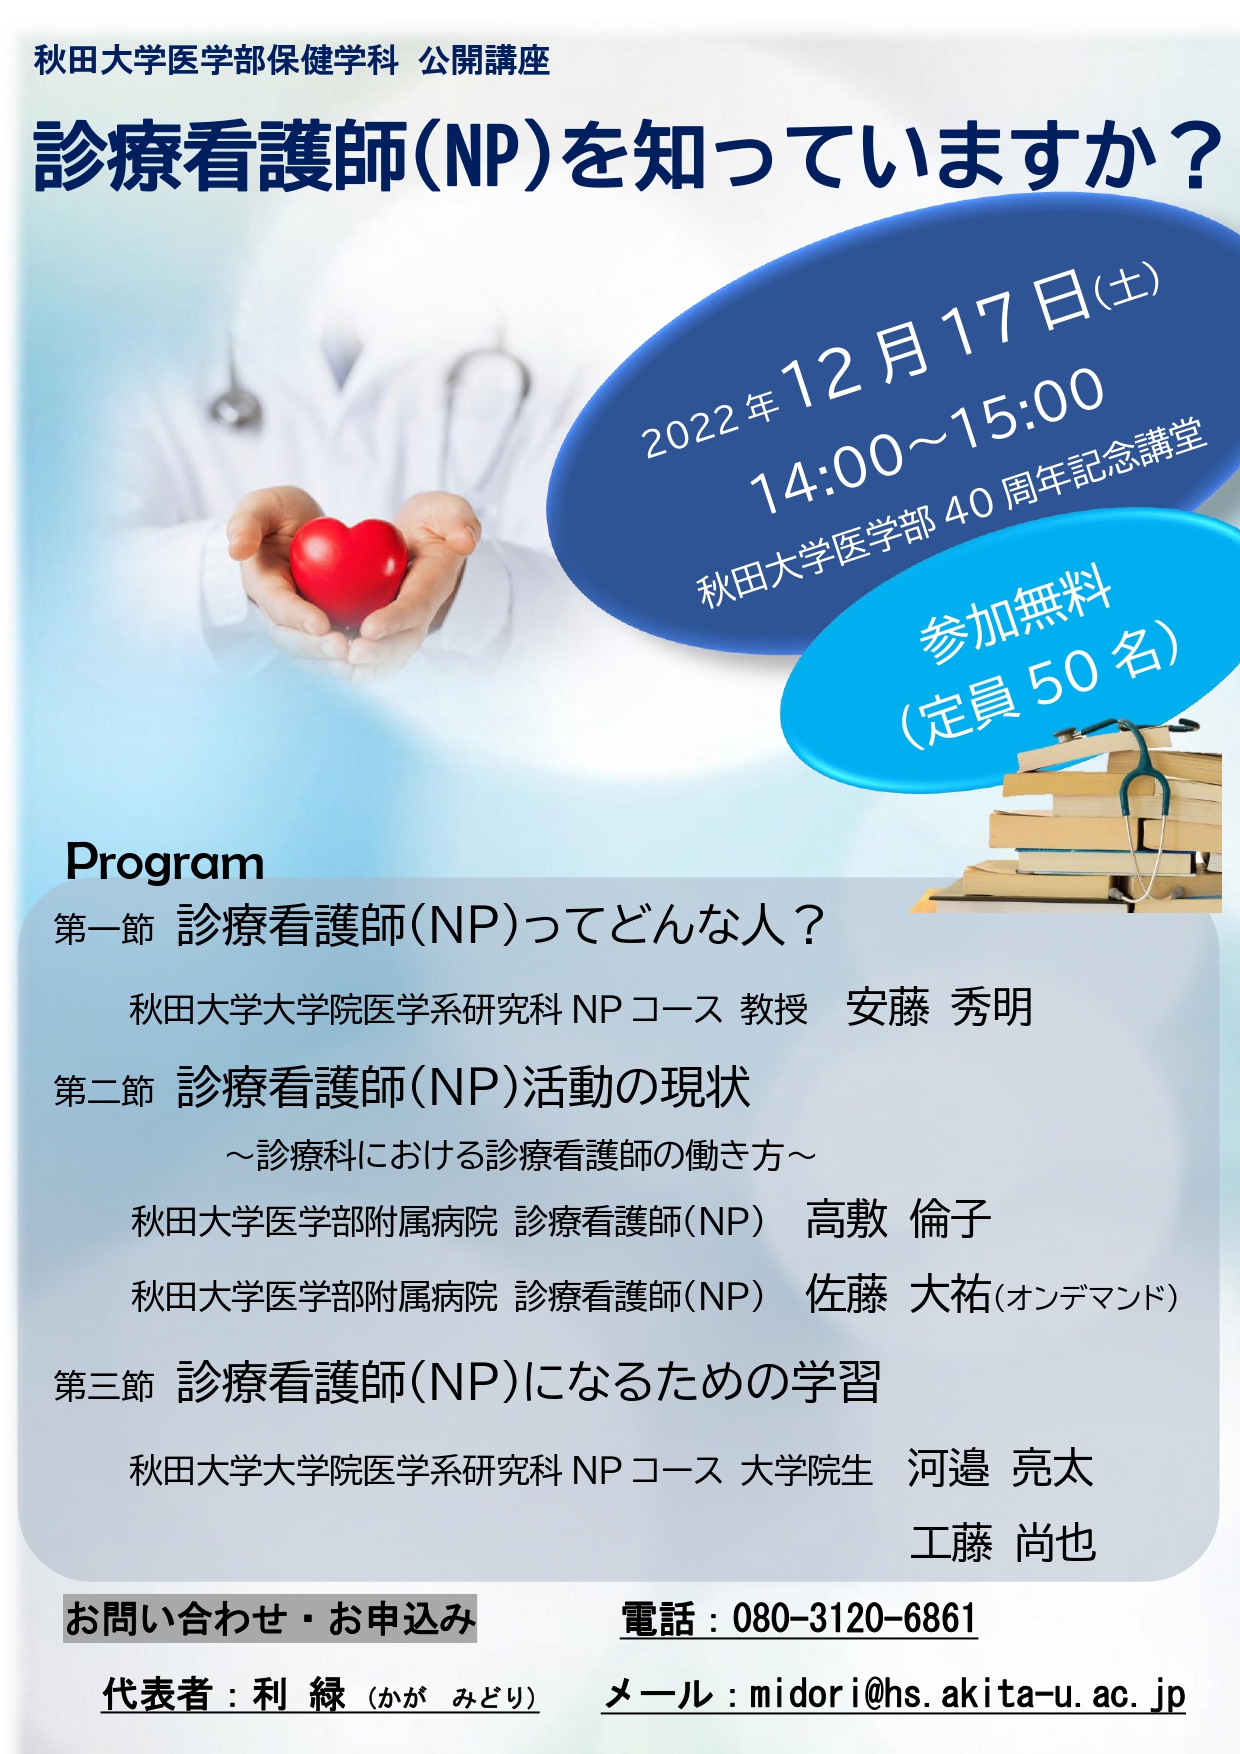 12月17日（土）公開講座「診療看護師（NP）を知っていますか？」開催のご案内